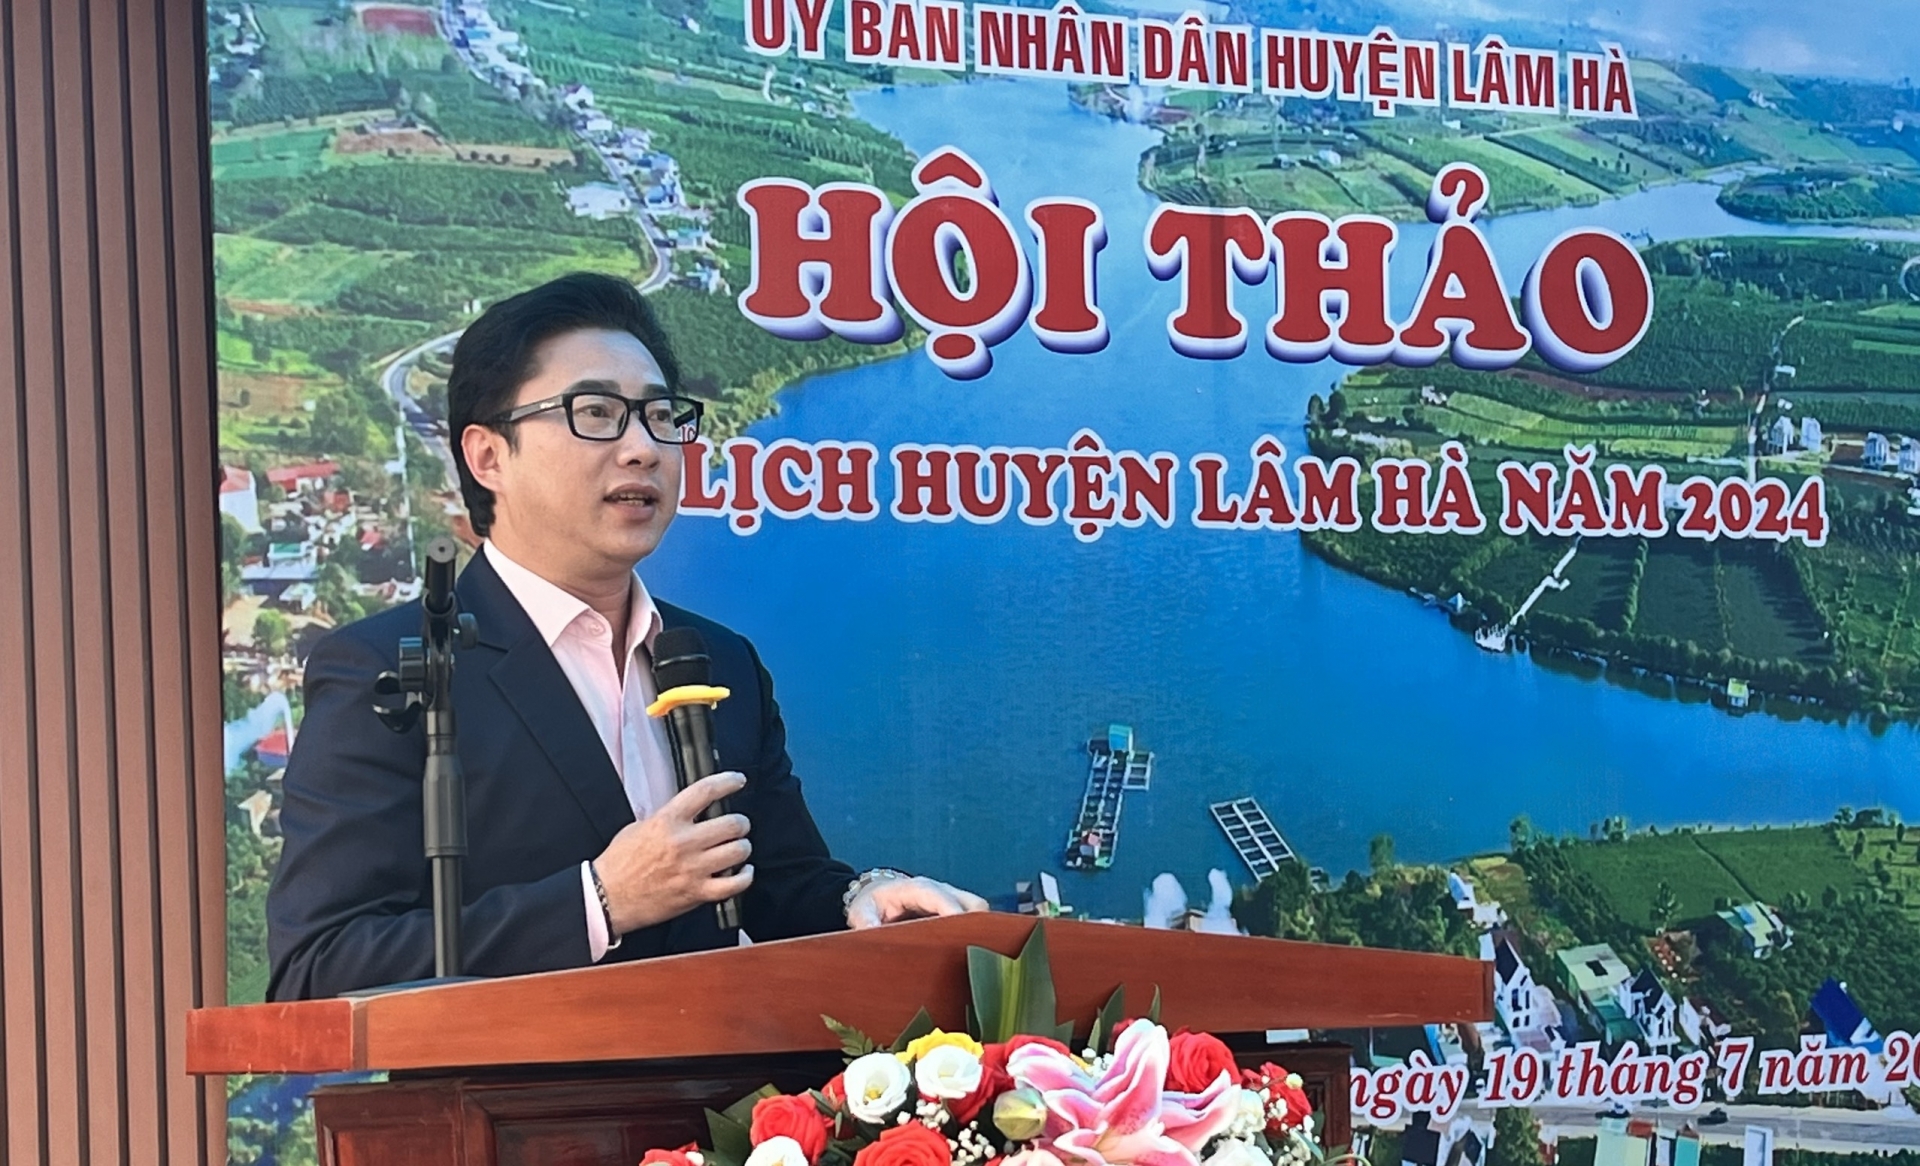 Ông Hoàng Ngọc Huy - Giám đốc Bảo tàng tỉnh Lâm Đồng phát biểu tại chương trình